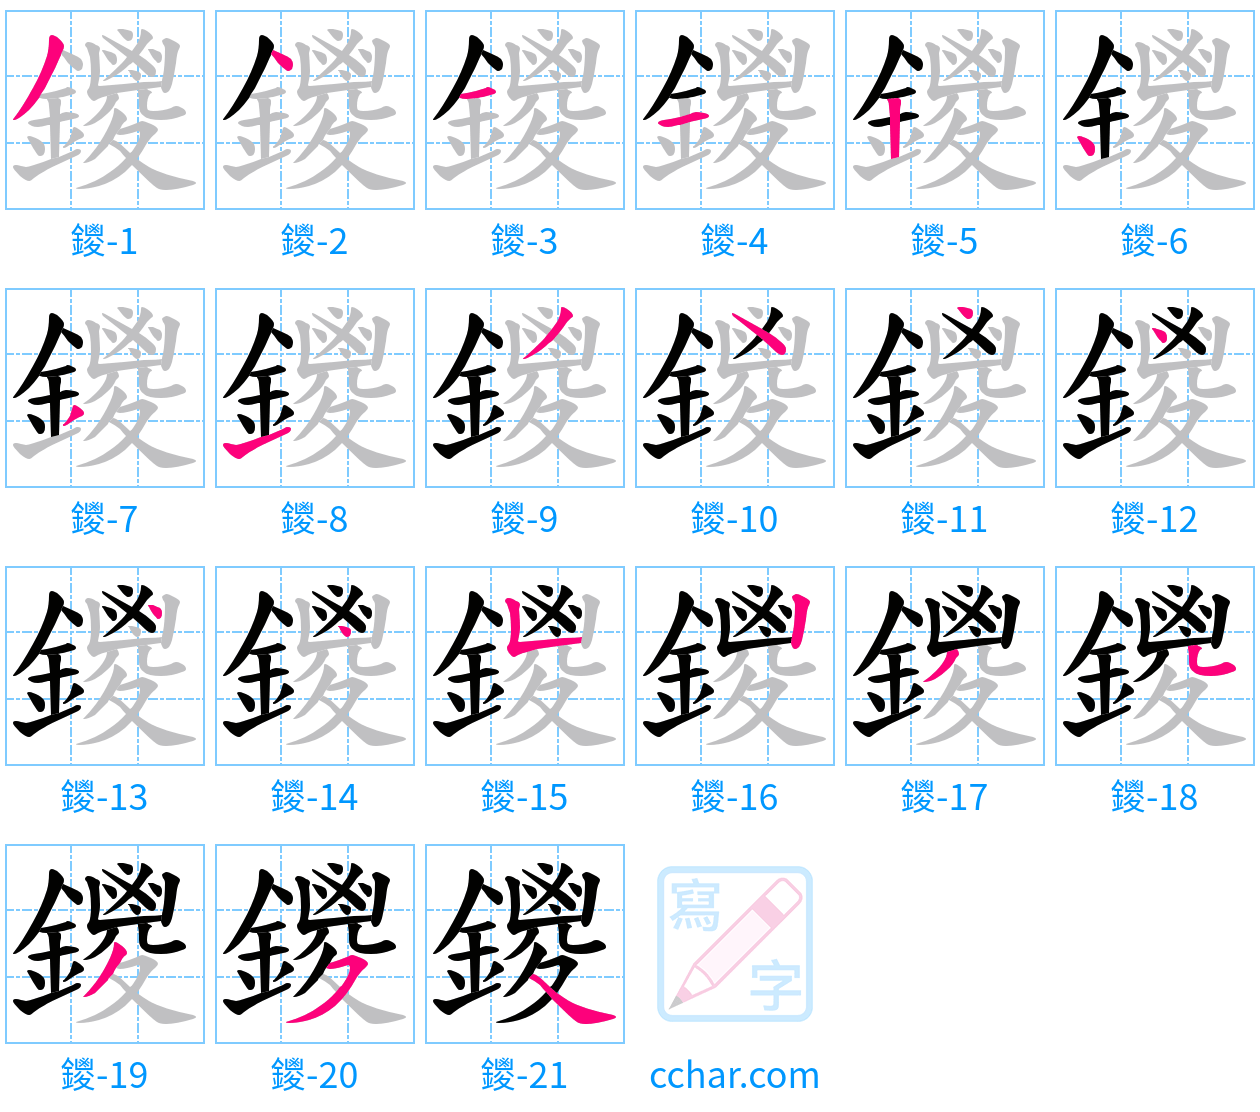 鑁 stroke order step-by-step diagram